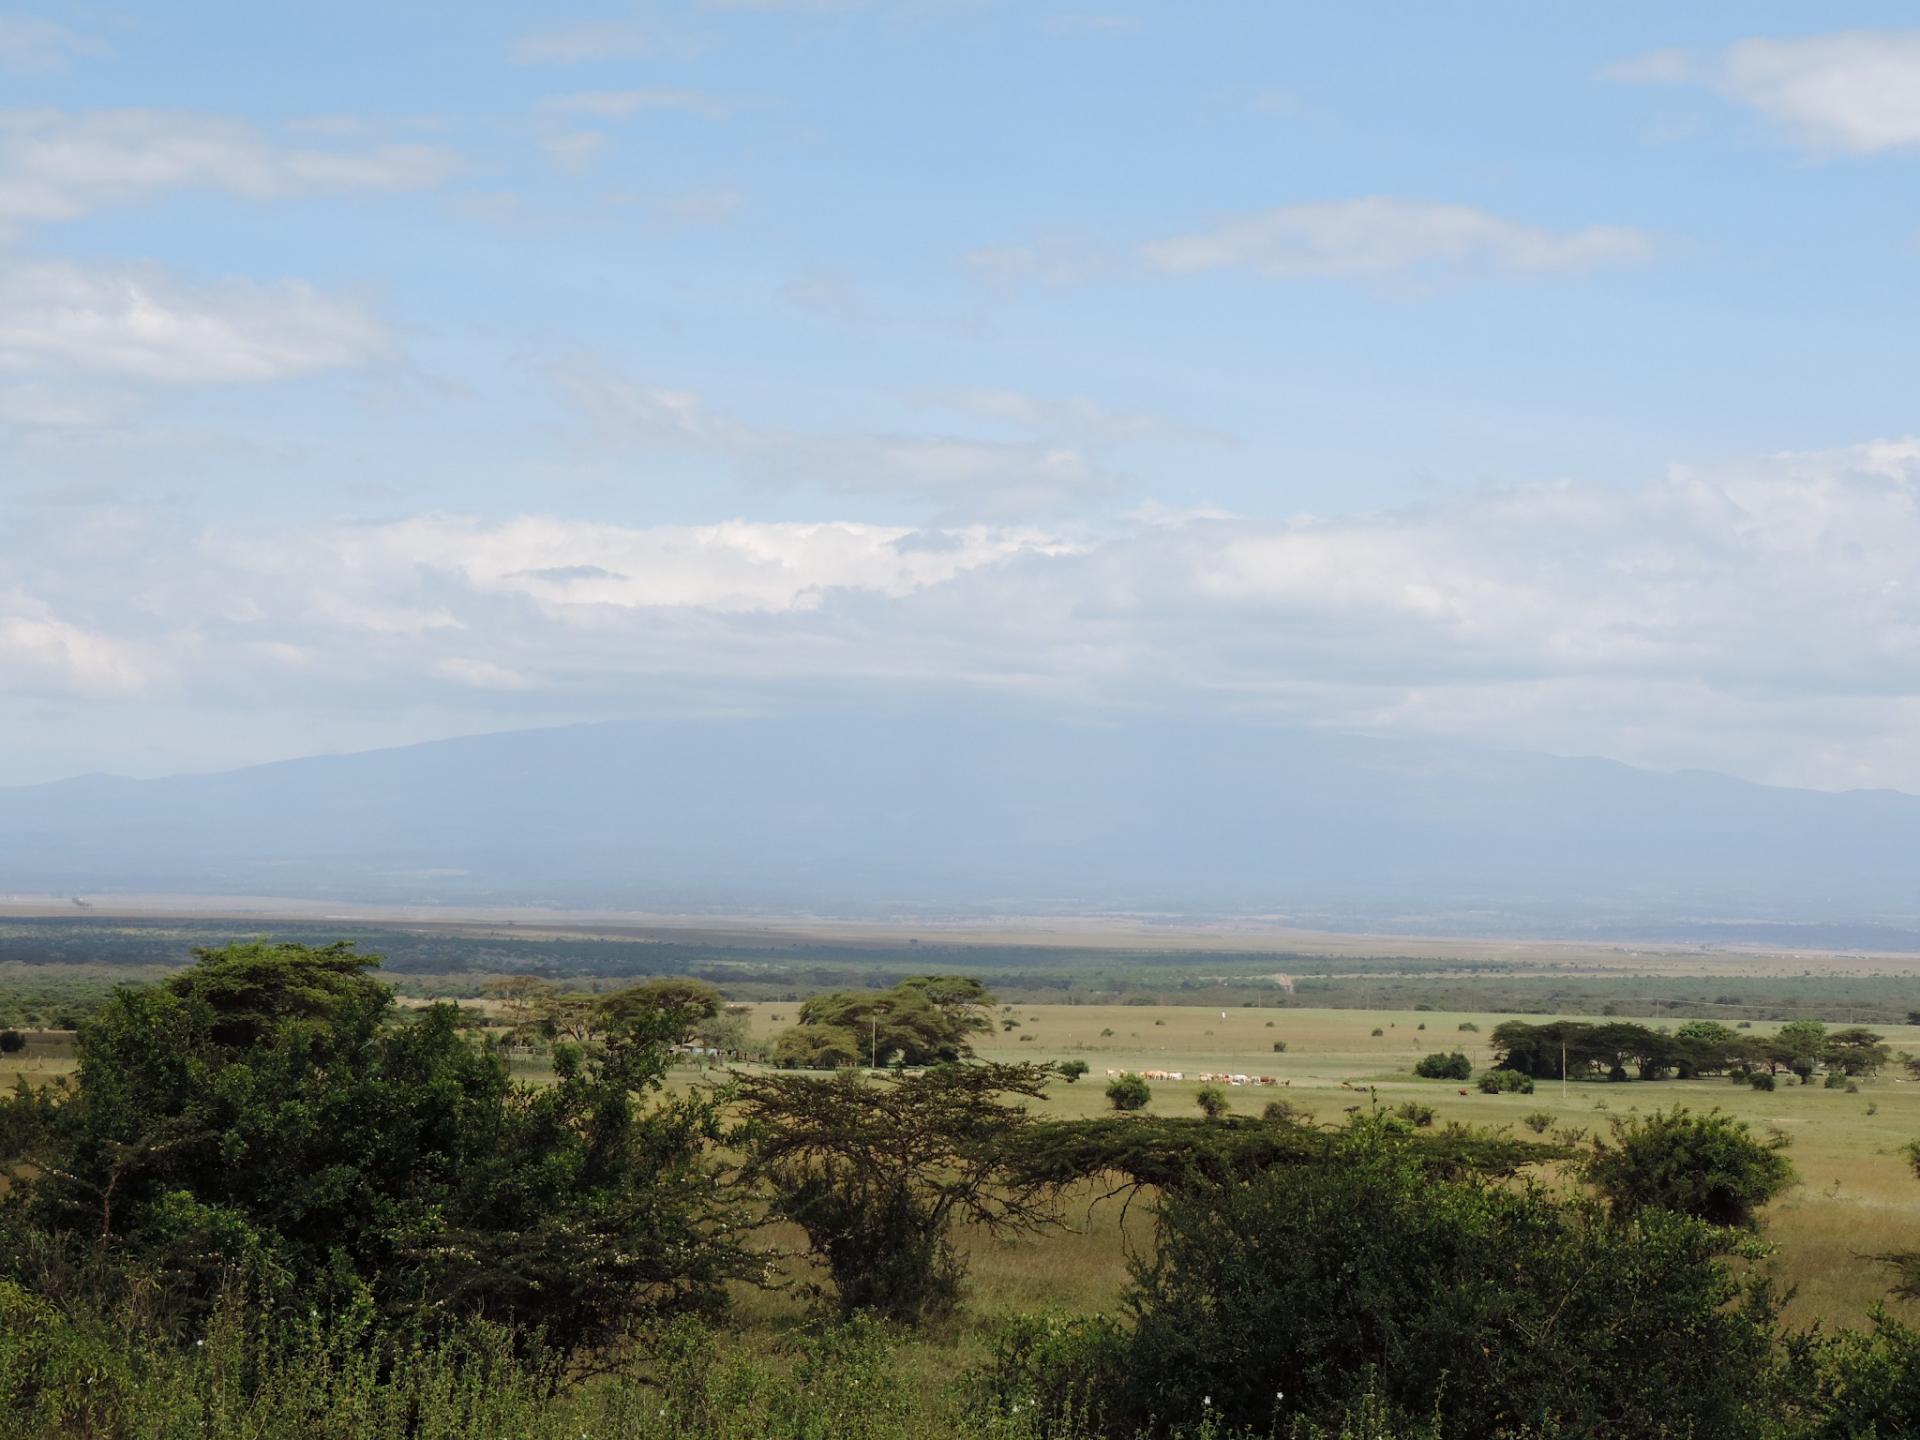 Kenya Short Safaris, YHA Kenya Travel, Adventure Safari Tours, Budget Camping Safaris,Short Tours Safari Bookings, 